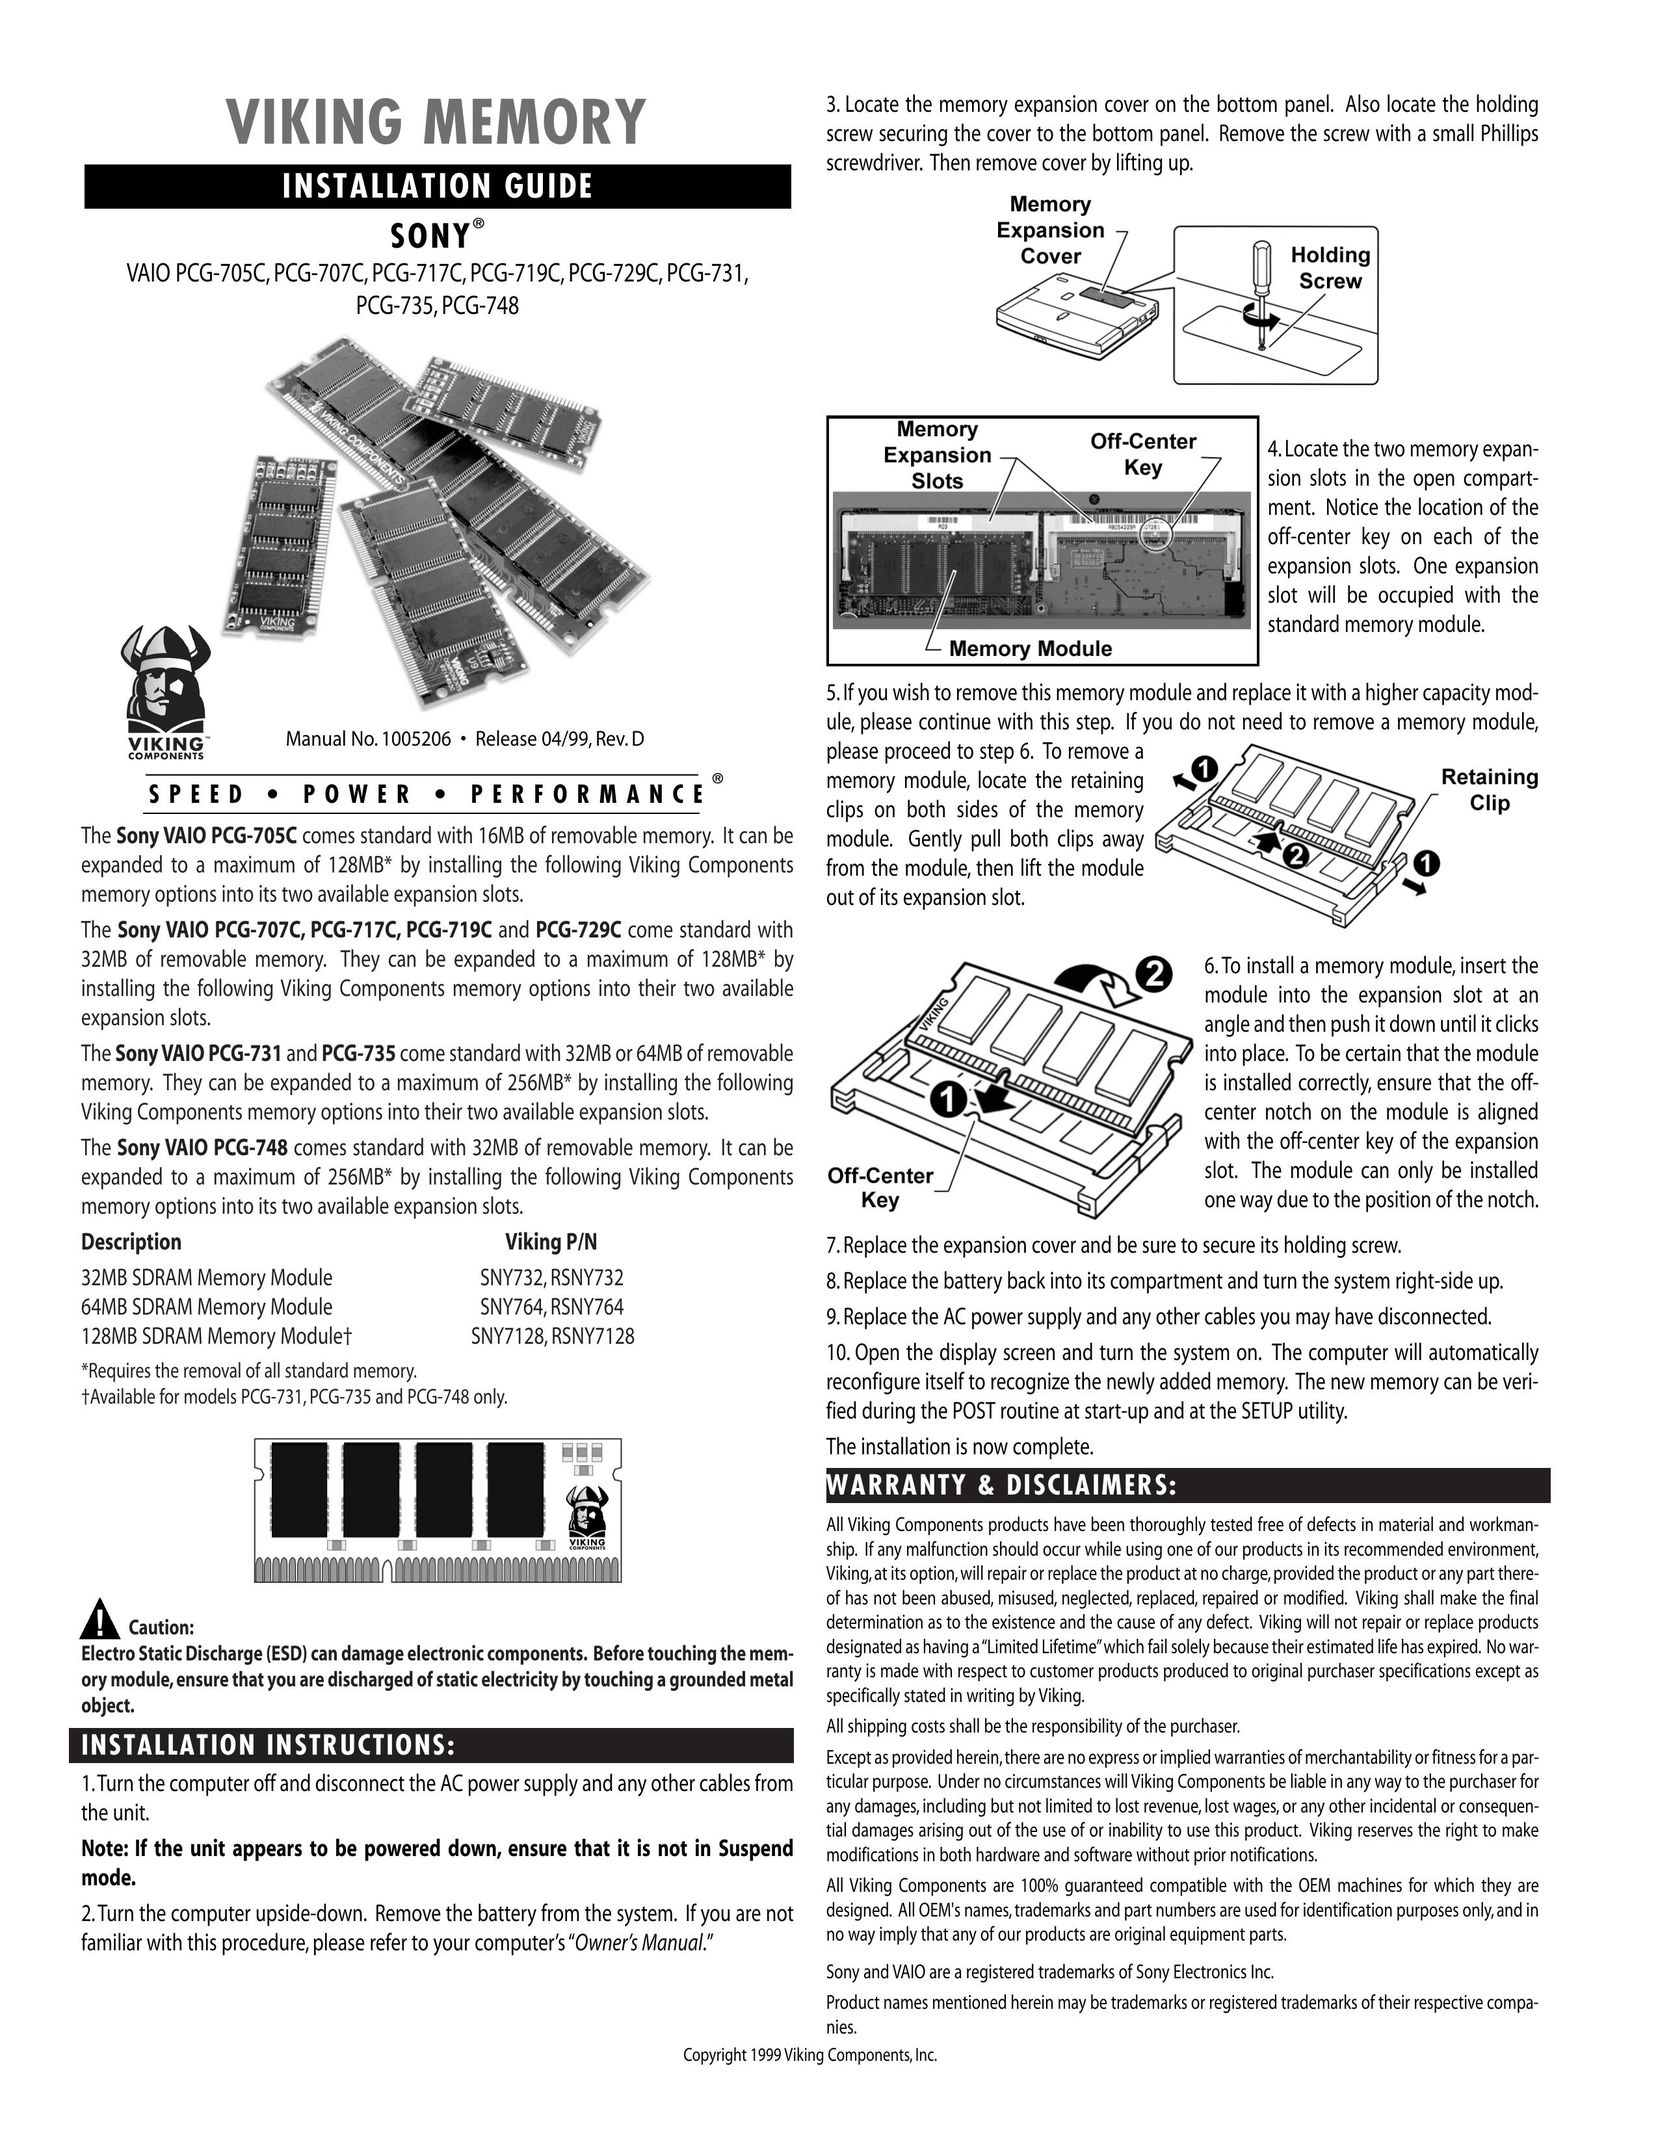 Viking InterWorks PCG-719C Personal Computer User Manual